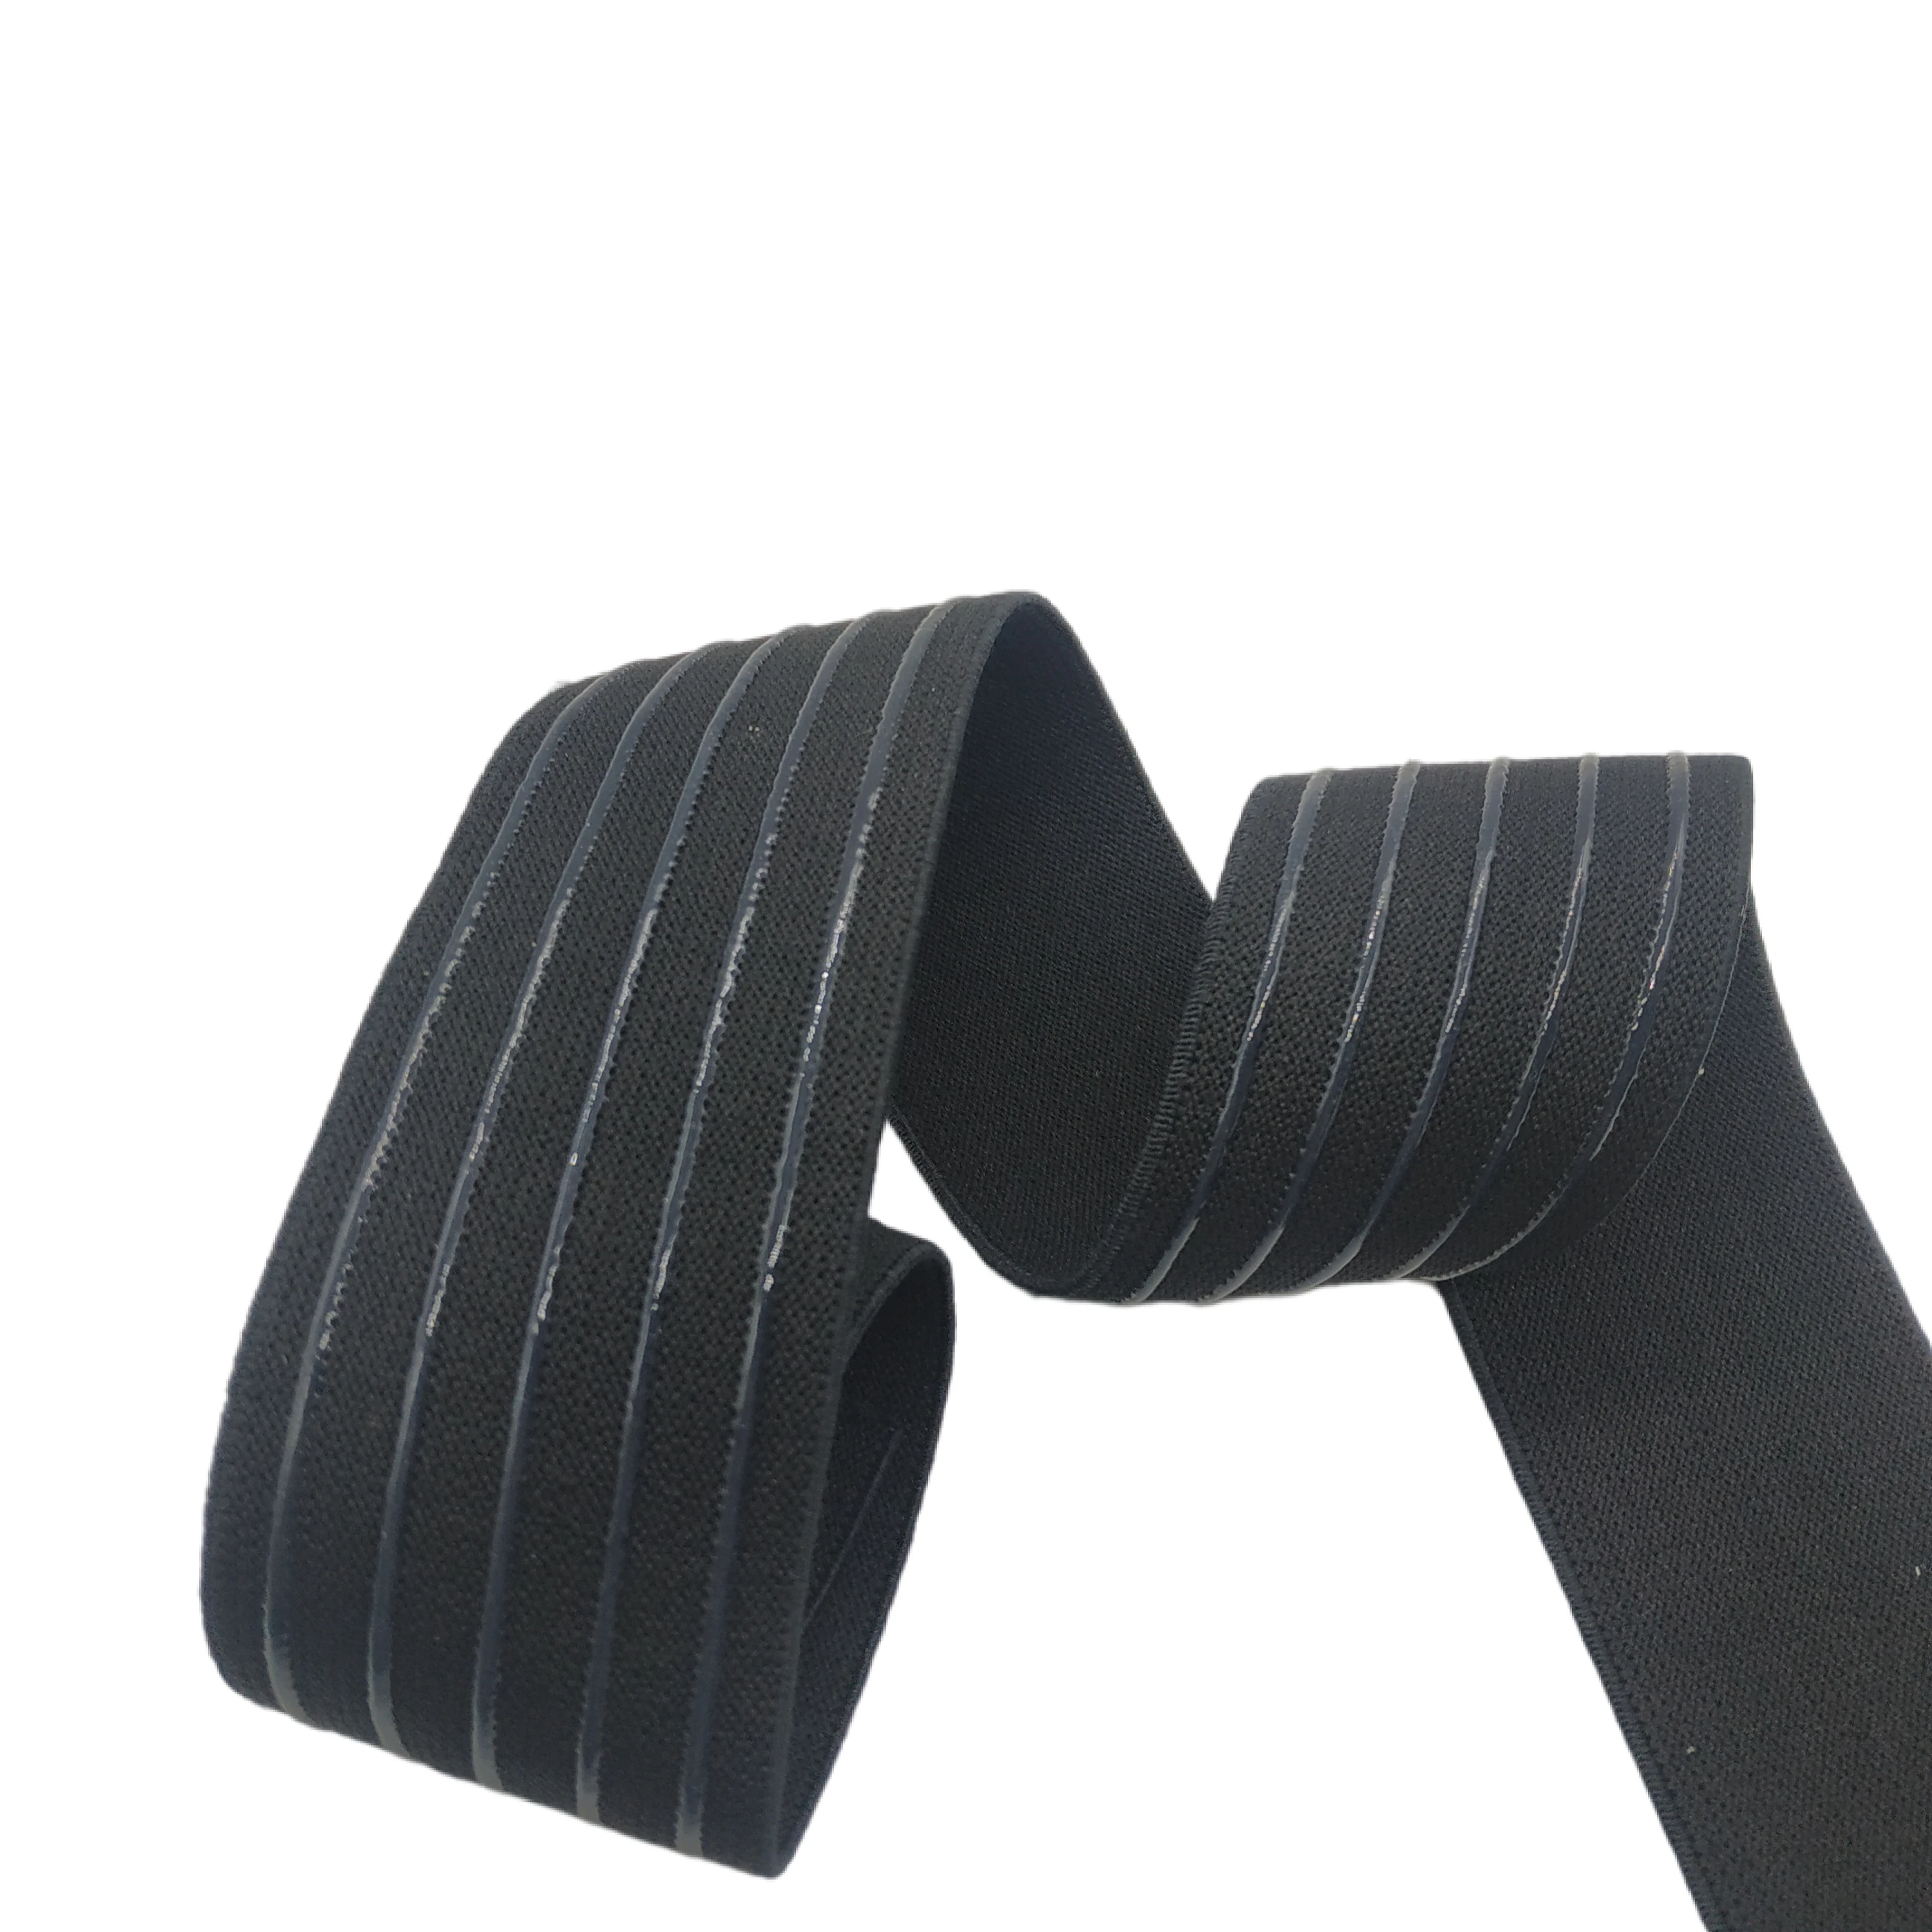 Высококачественная нескользящая прозрачная черная резинка шириной 2 метра 45 мм для шитья ремня своими руками, аксессуары для нижнего белья.